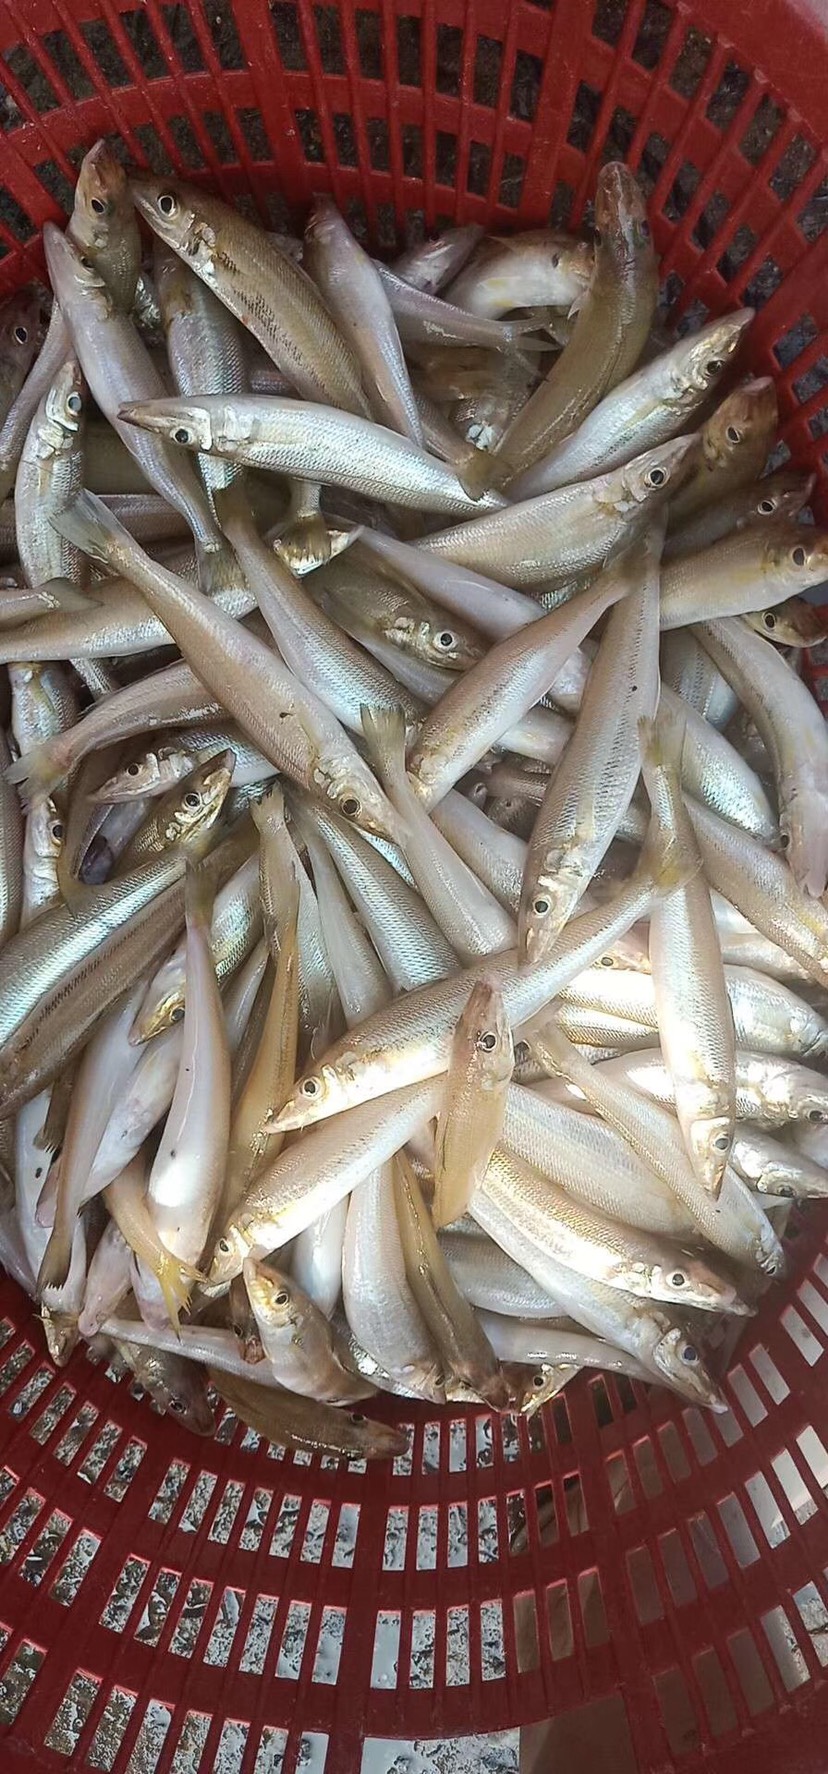 沙尖鱼 沙钻鱼(沙丁鱼)